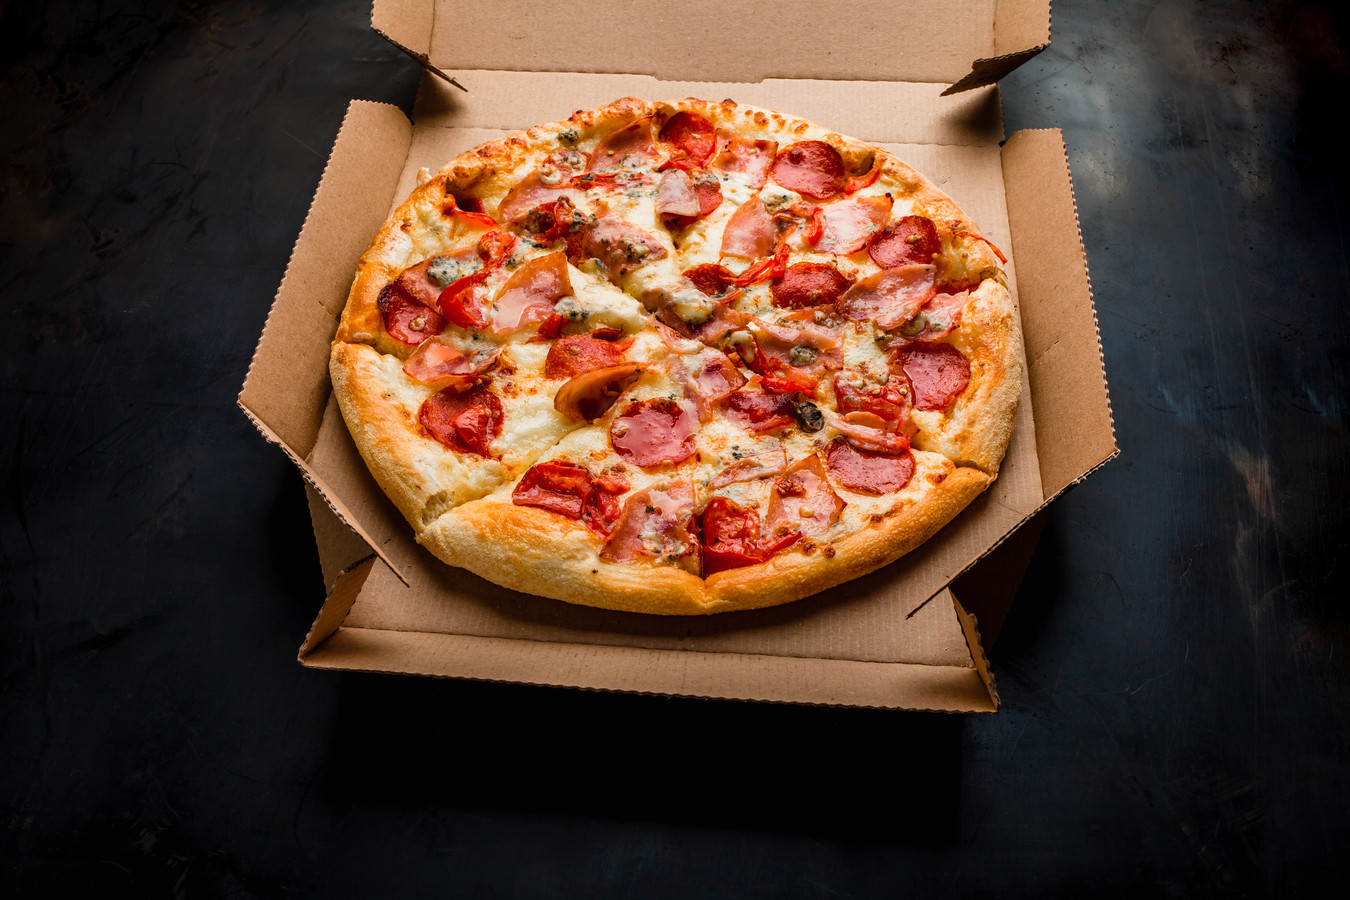 Adviesbureau Involve laat pizza bezorgen bij alle collega's om de maandelijkse lunch alsnog voort te zetten